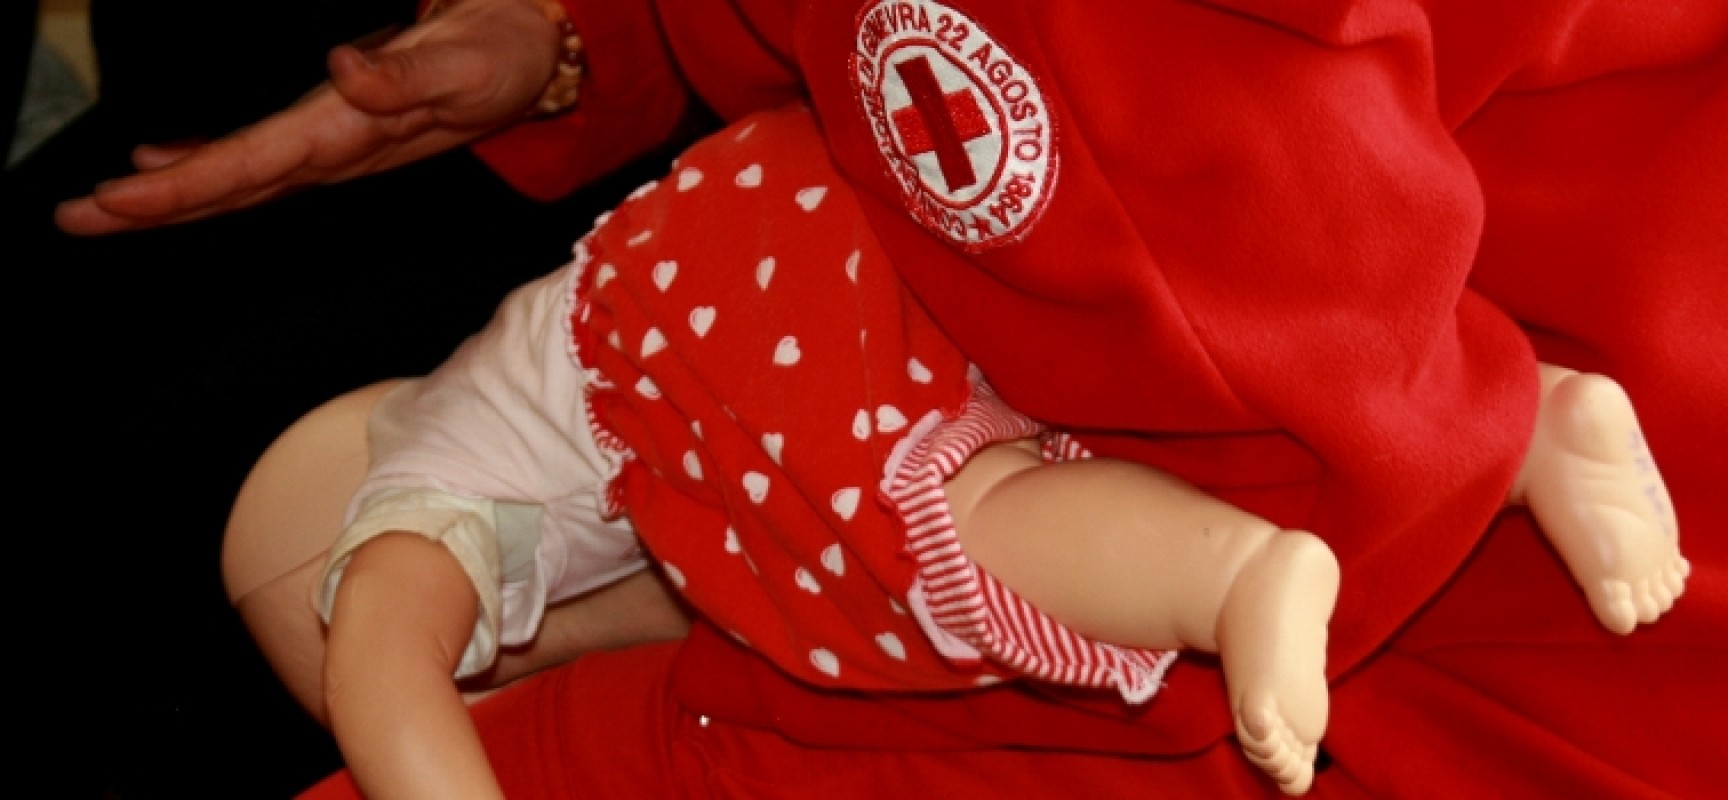 Manovre salvavita pediatriche, incontro alla scuola materna “Gesù Fanciullo”